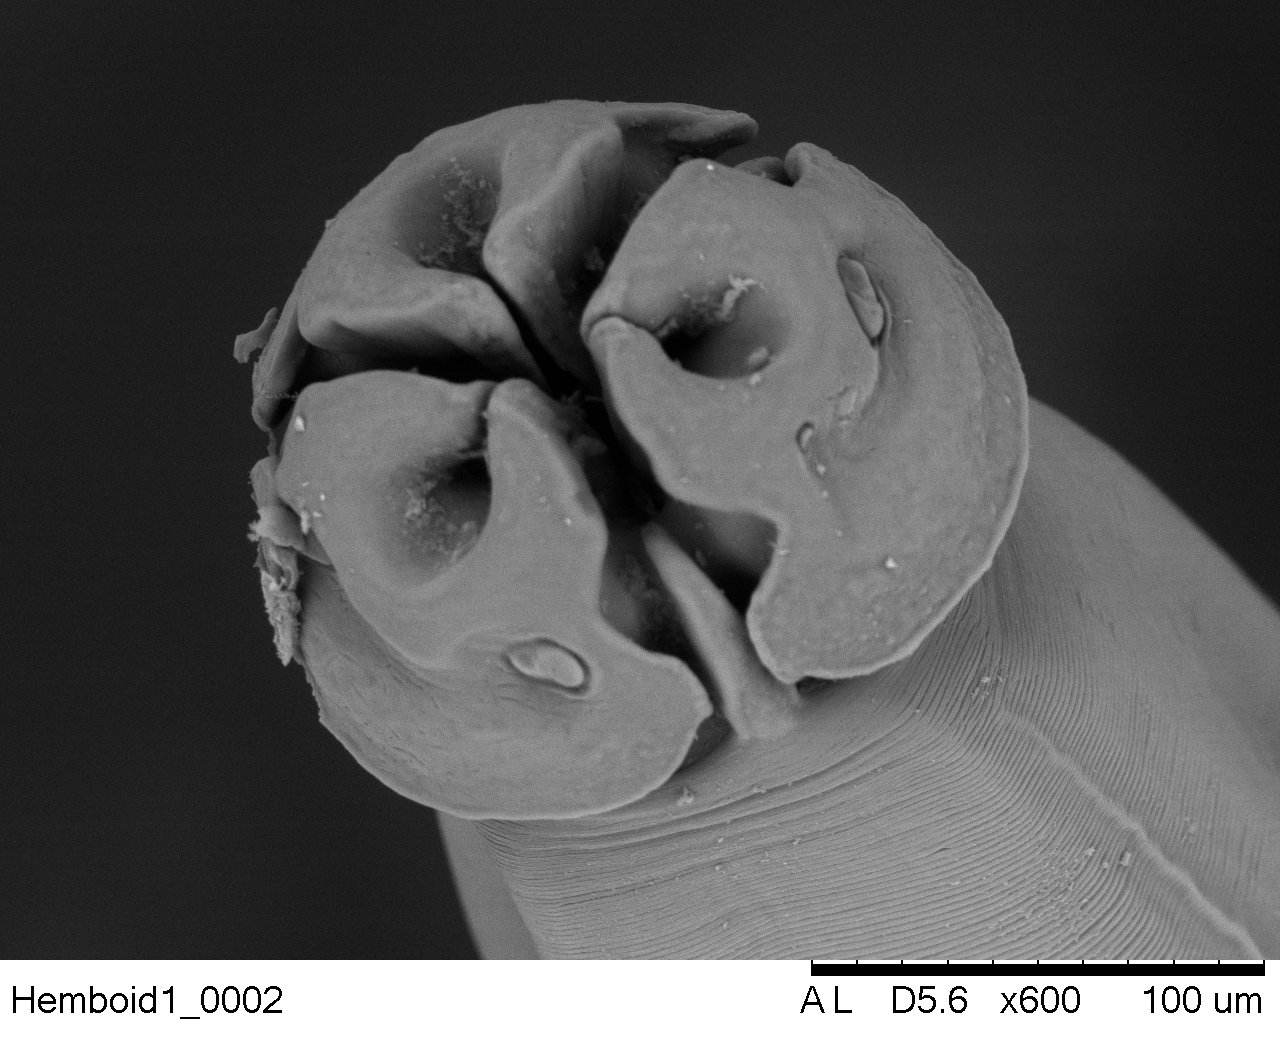 Parásito visto desde microscopía electrónica